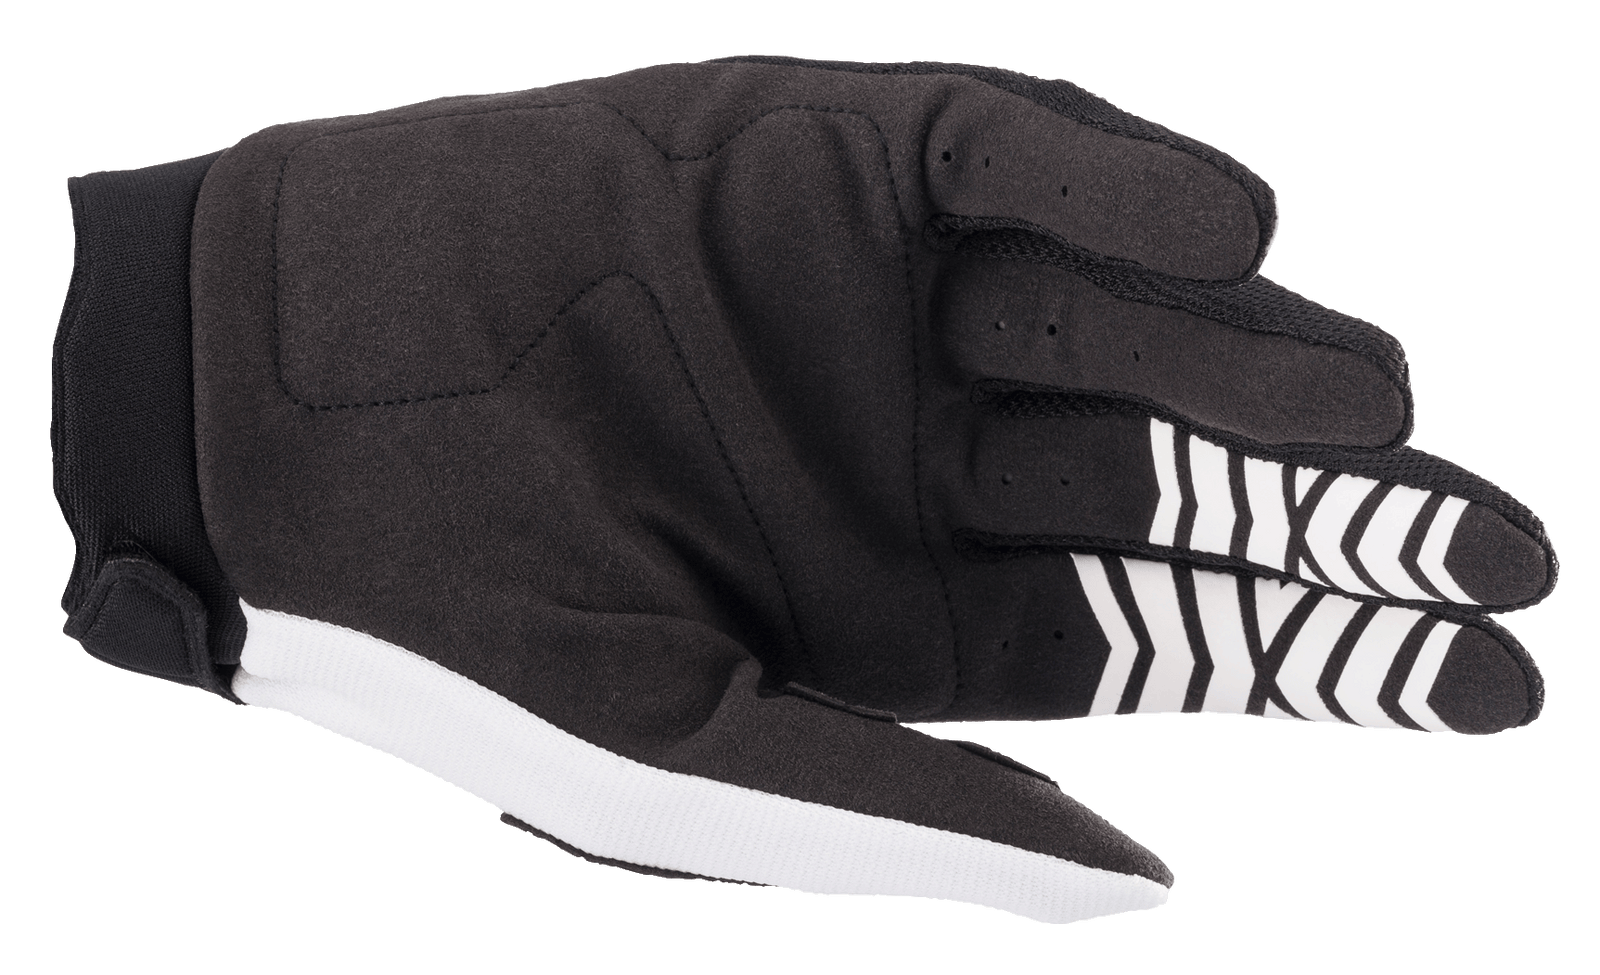 Full Bore Gloves - PC